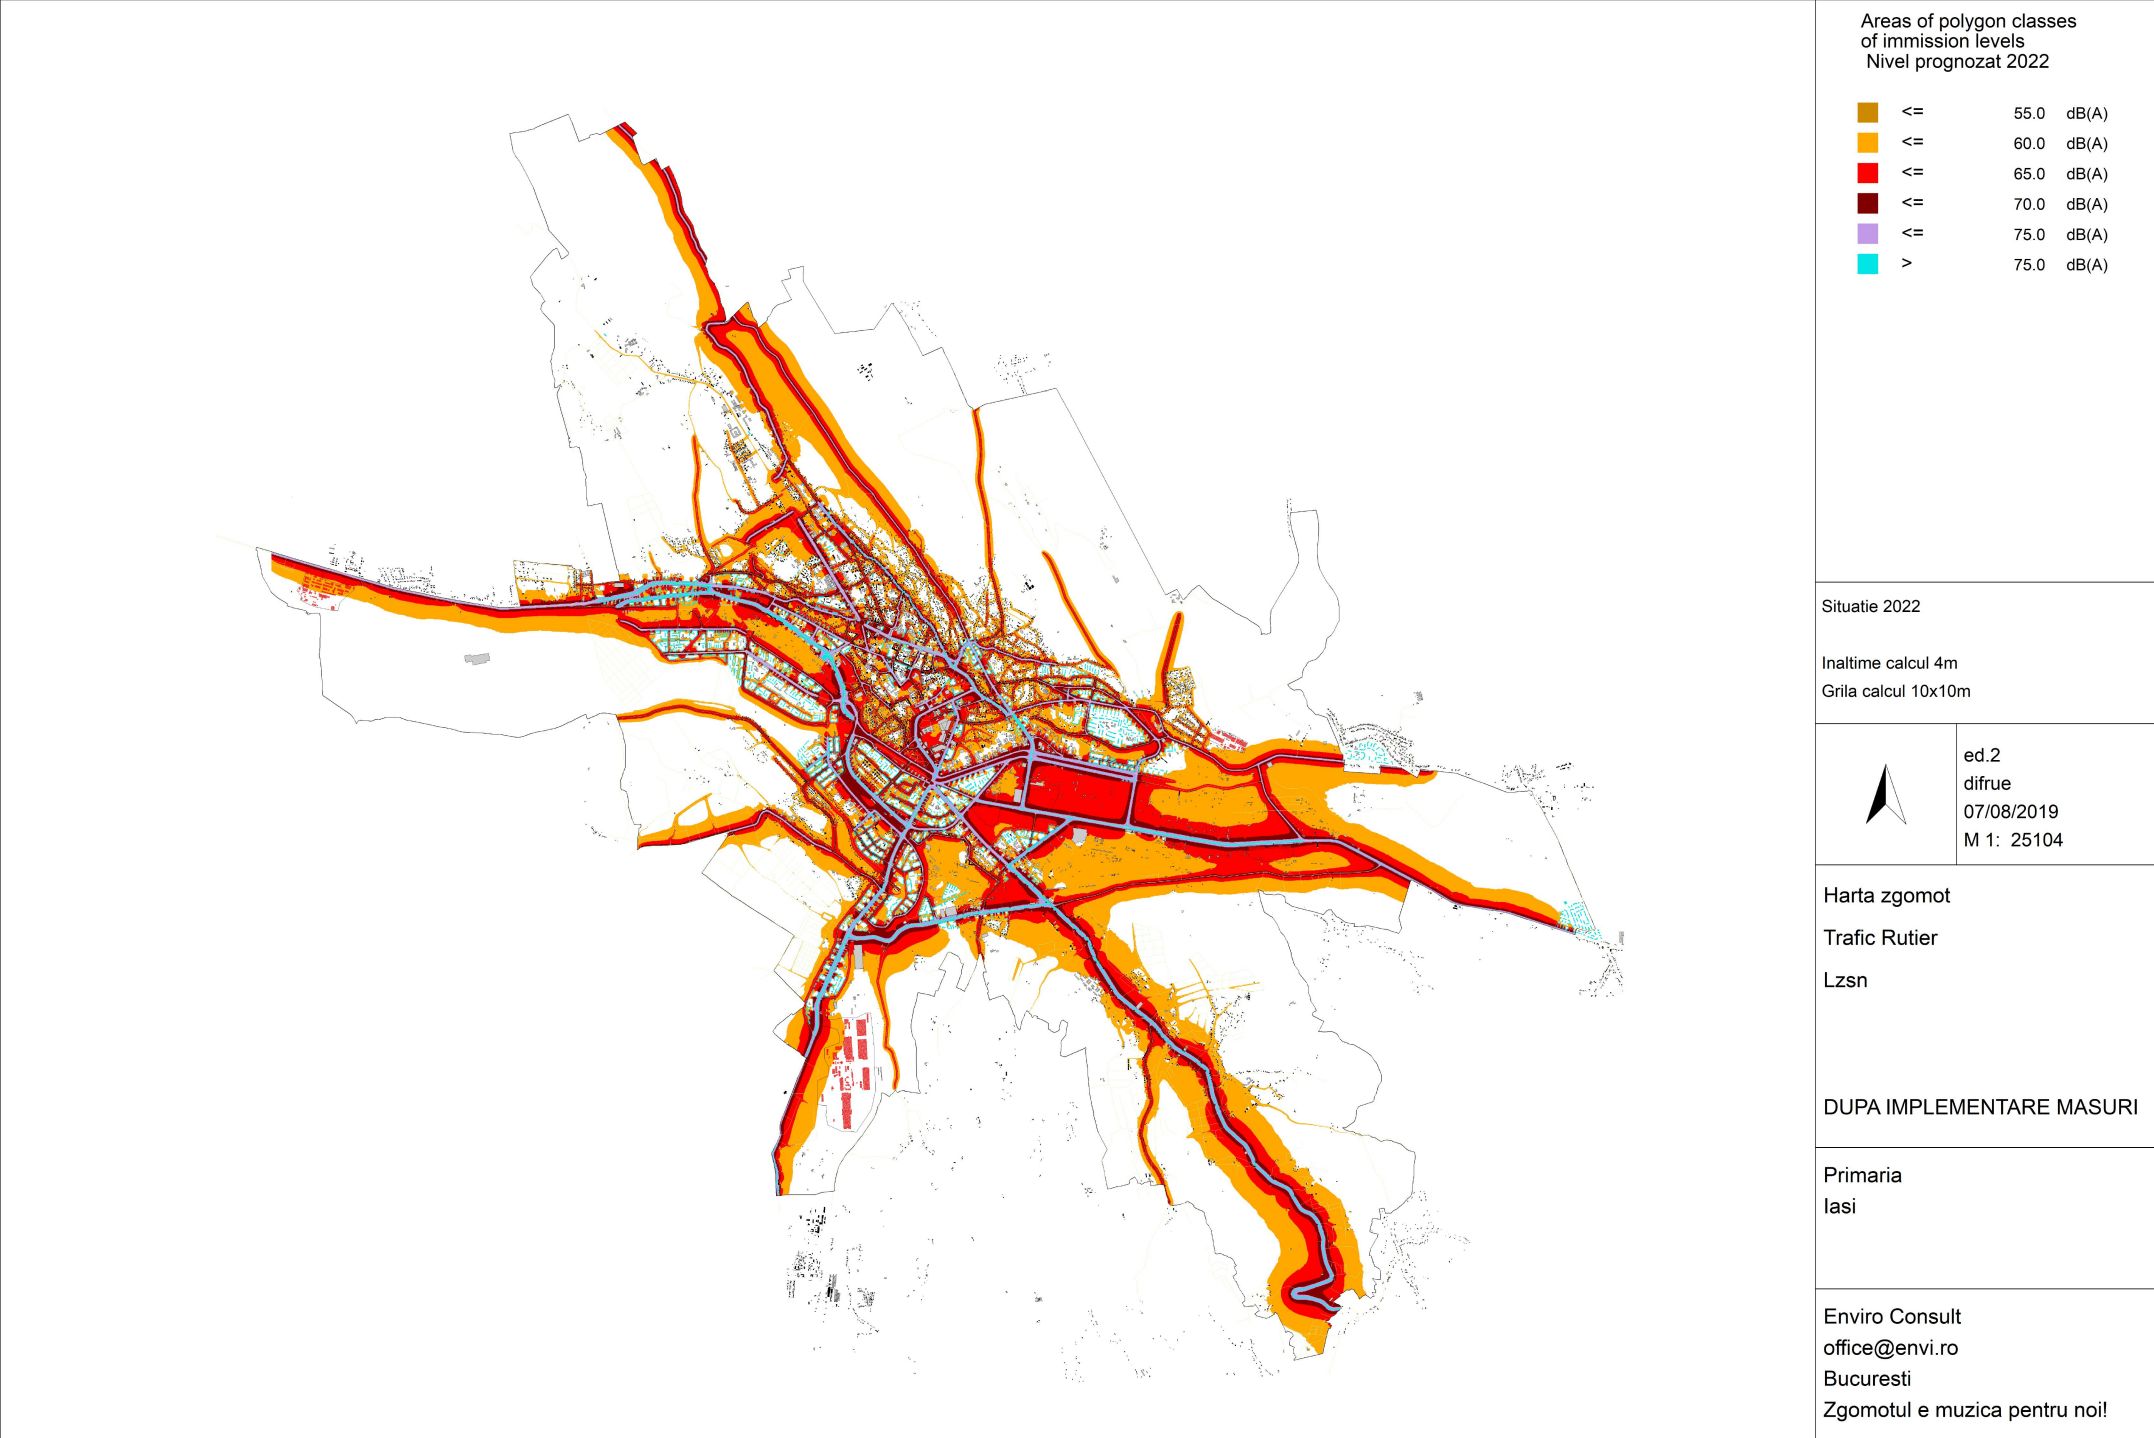 Harta zgomotului din Iași, după cum se poate vedea, nu mai are nevoie de nicio prezentare. Este roși, portocalie iar pe alocuri albastră- cel mai mare nivel de poluare fonică